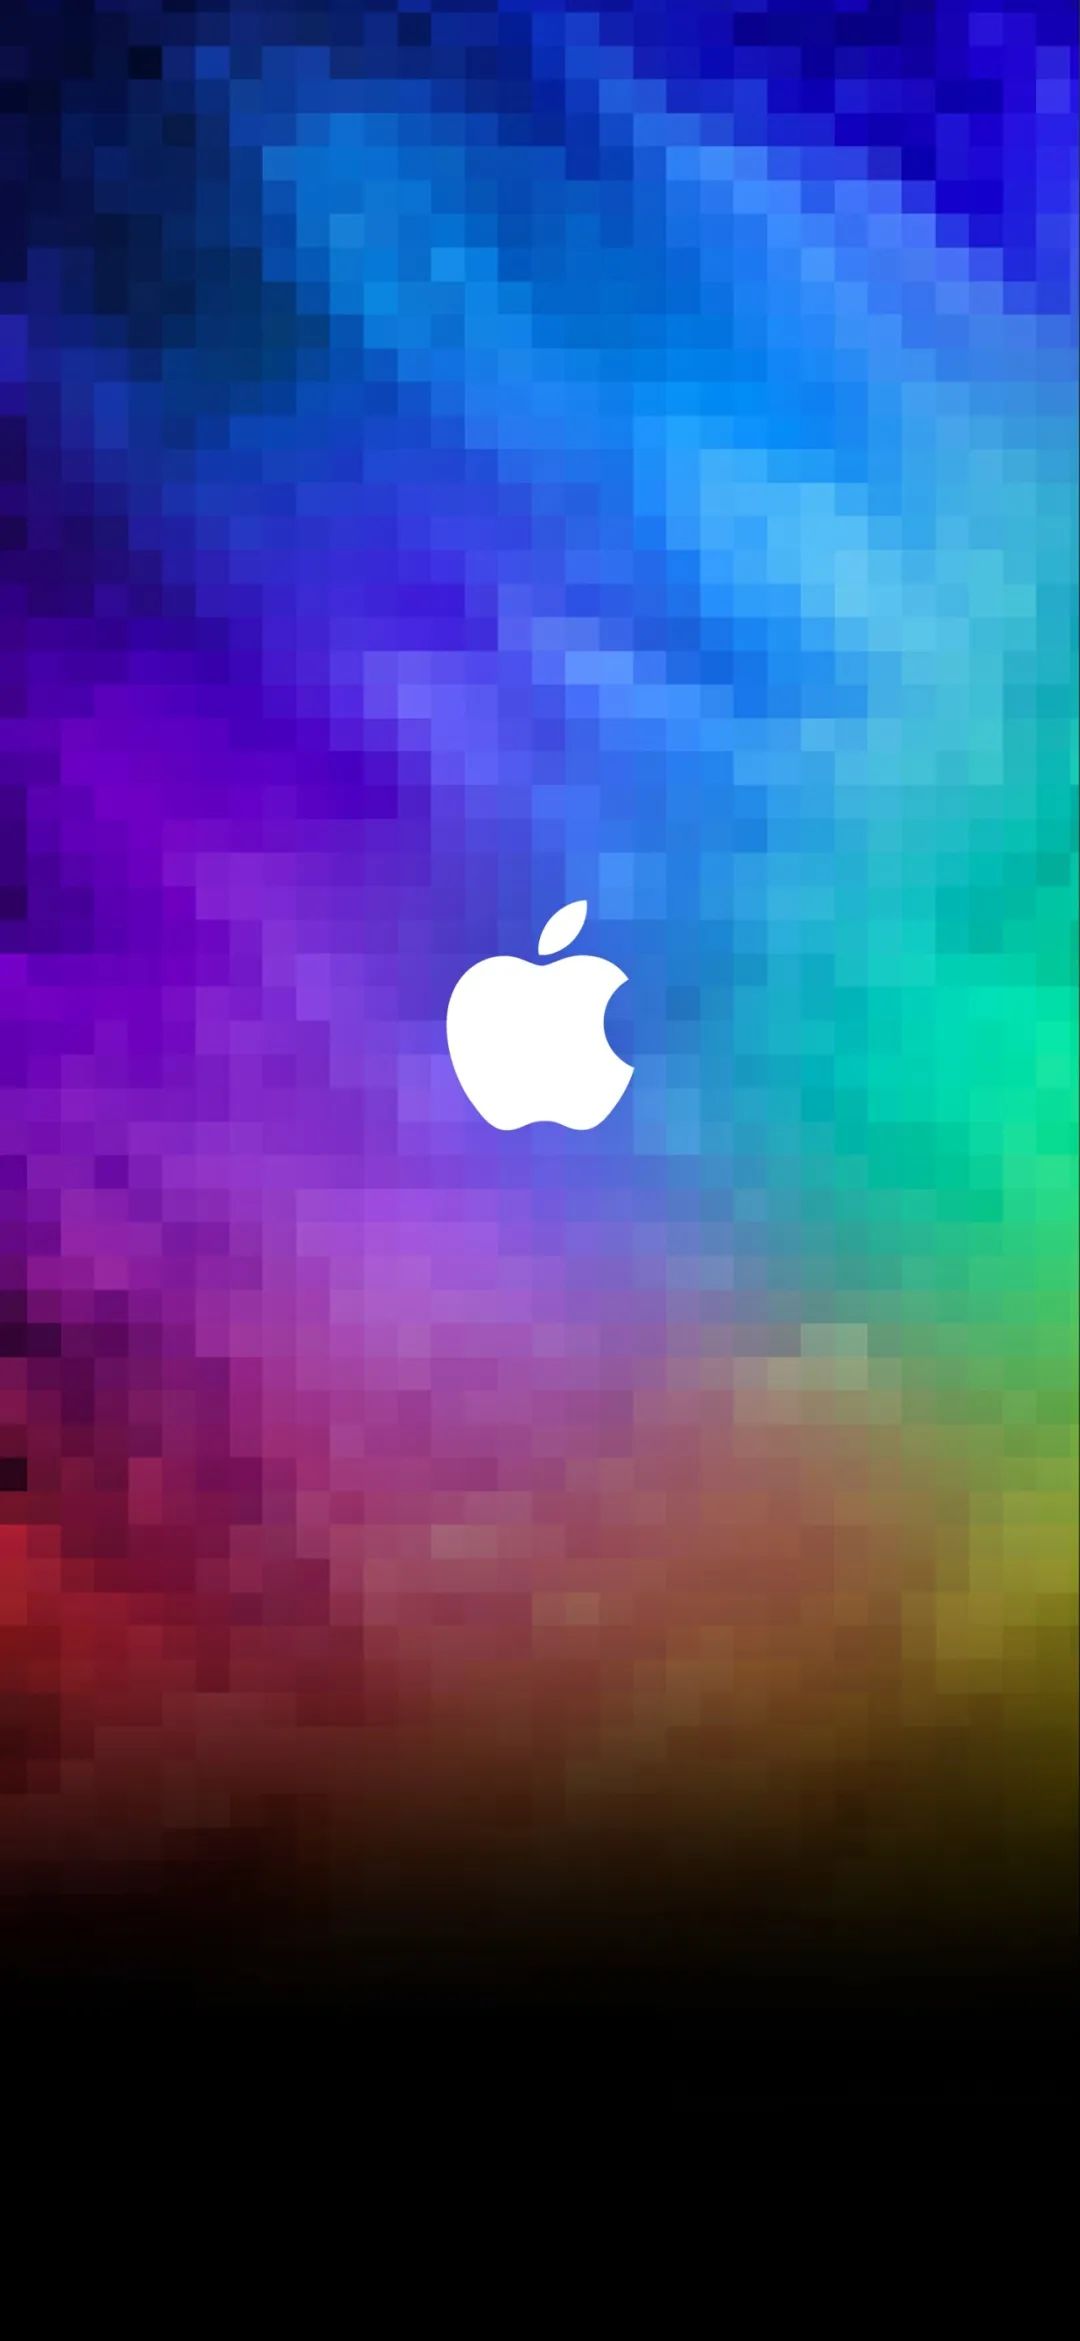 全面屏超清手机壁纸： 苹果必备系统类壁纸